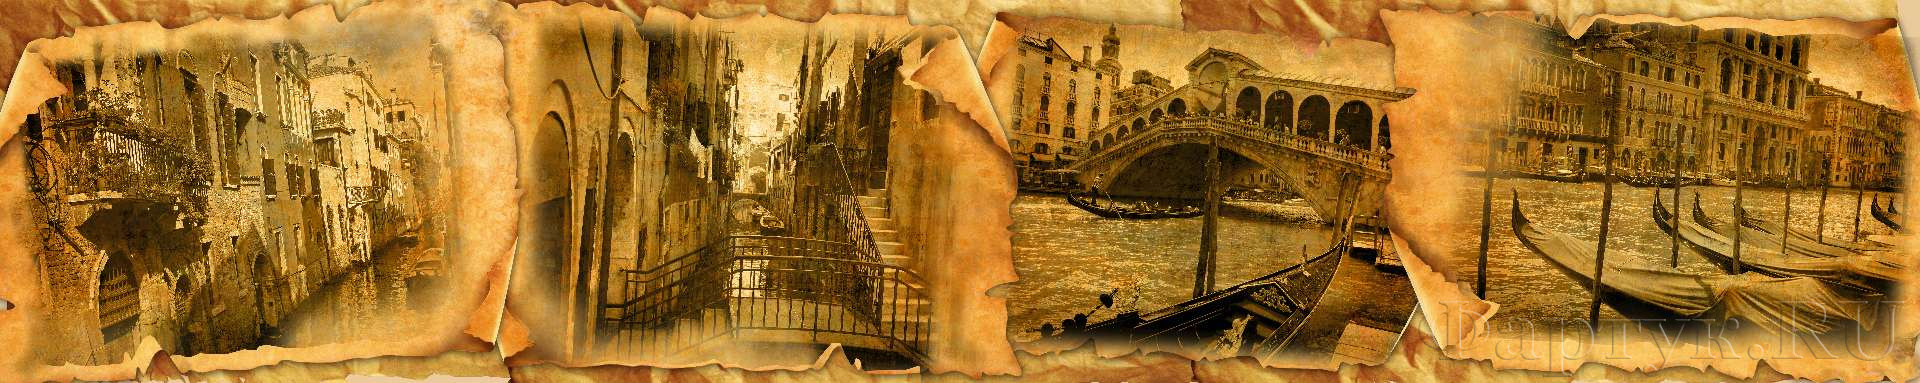 Коллаж из старых фото Венеция.